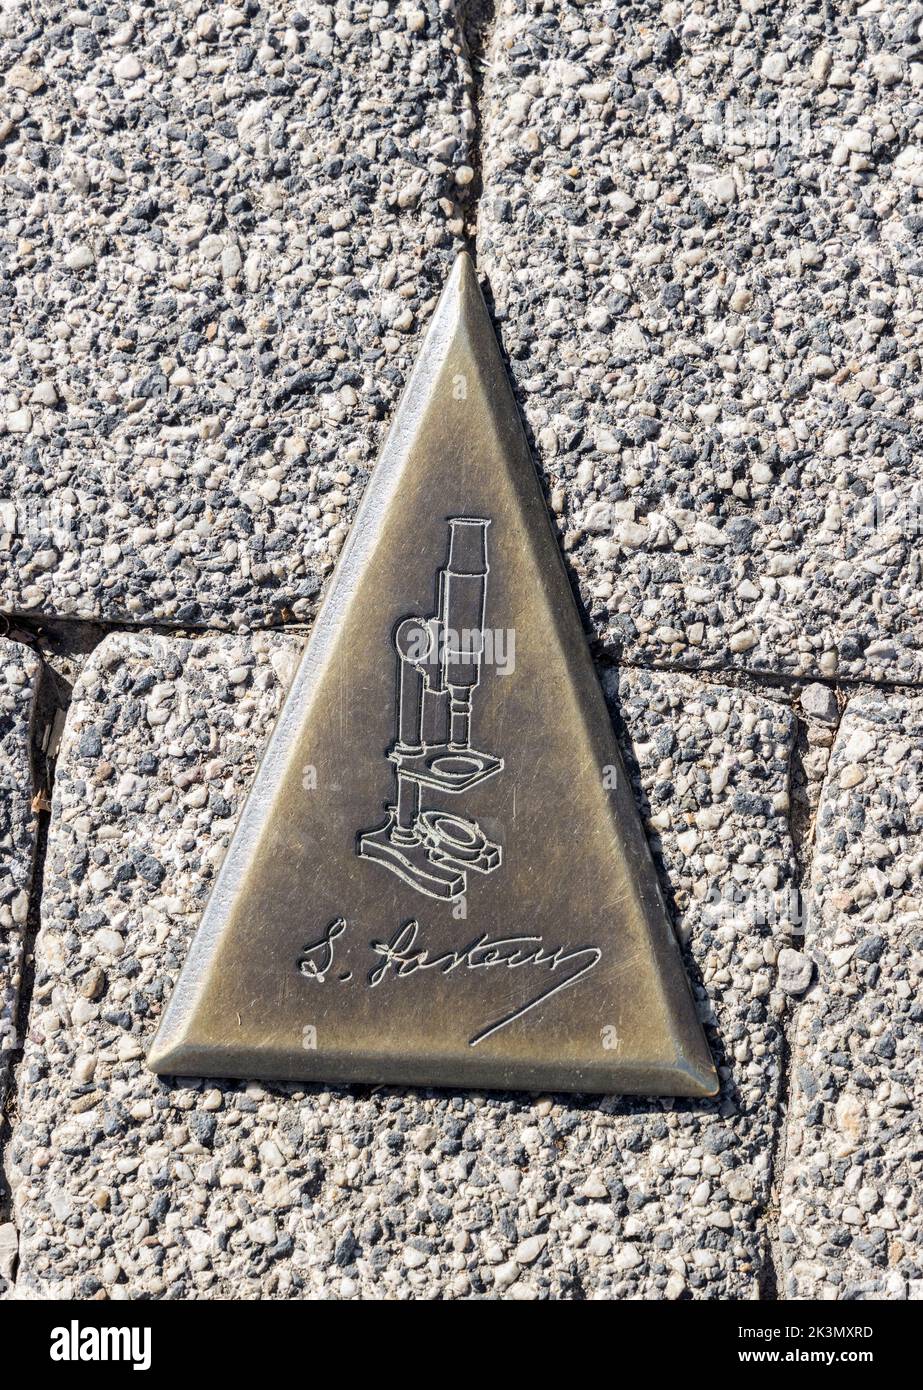 Louis Pasteur marcador establecido en el camino como ruta a seguir alrededor de la ciudad de Arbois, Jura, Francia Foto de stock